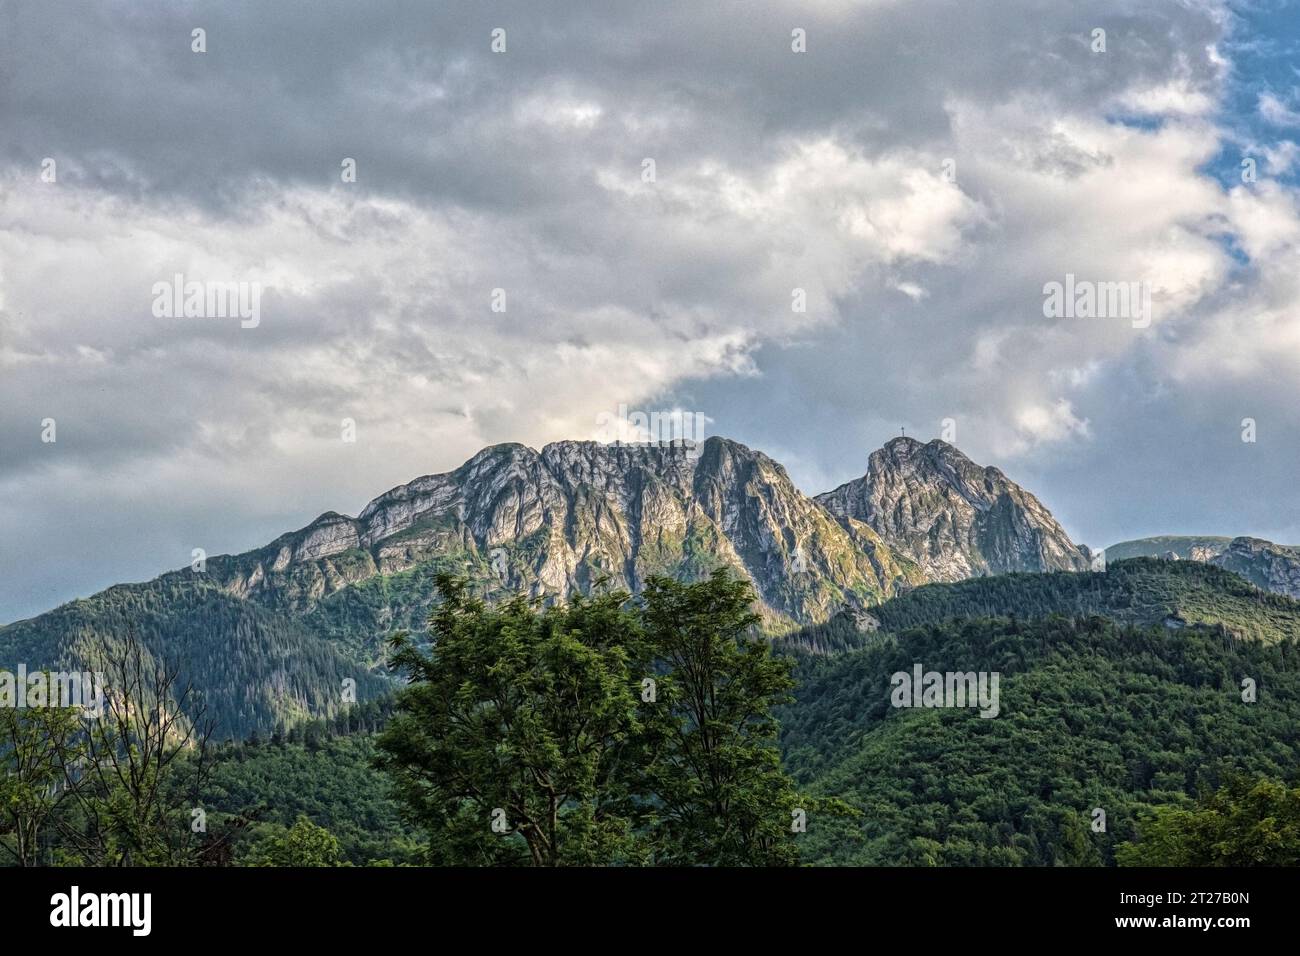 View on Giewont mountain in polish Tatra Mountains Stock Photo